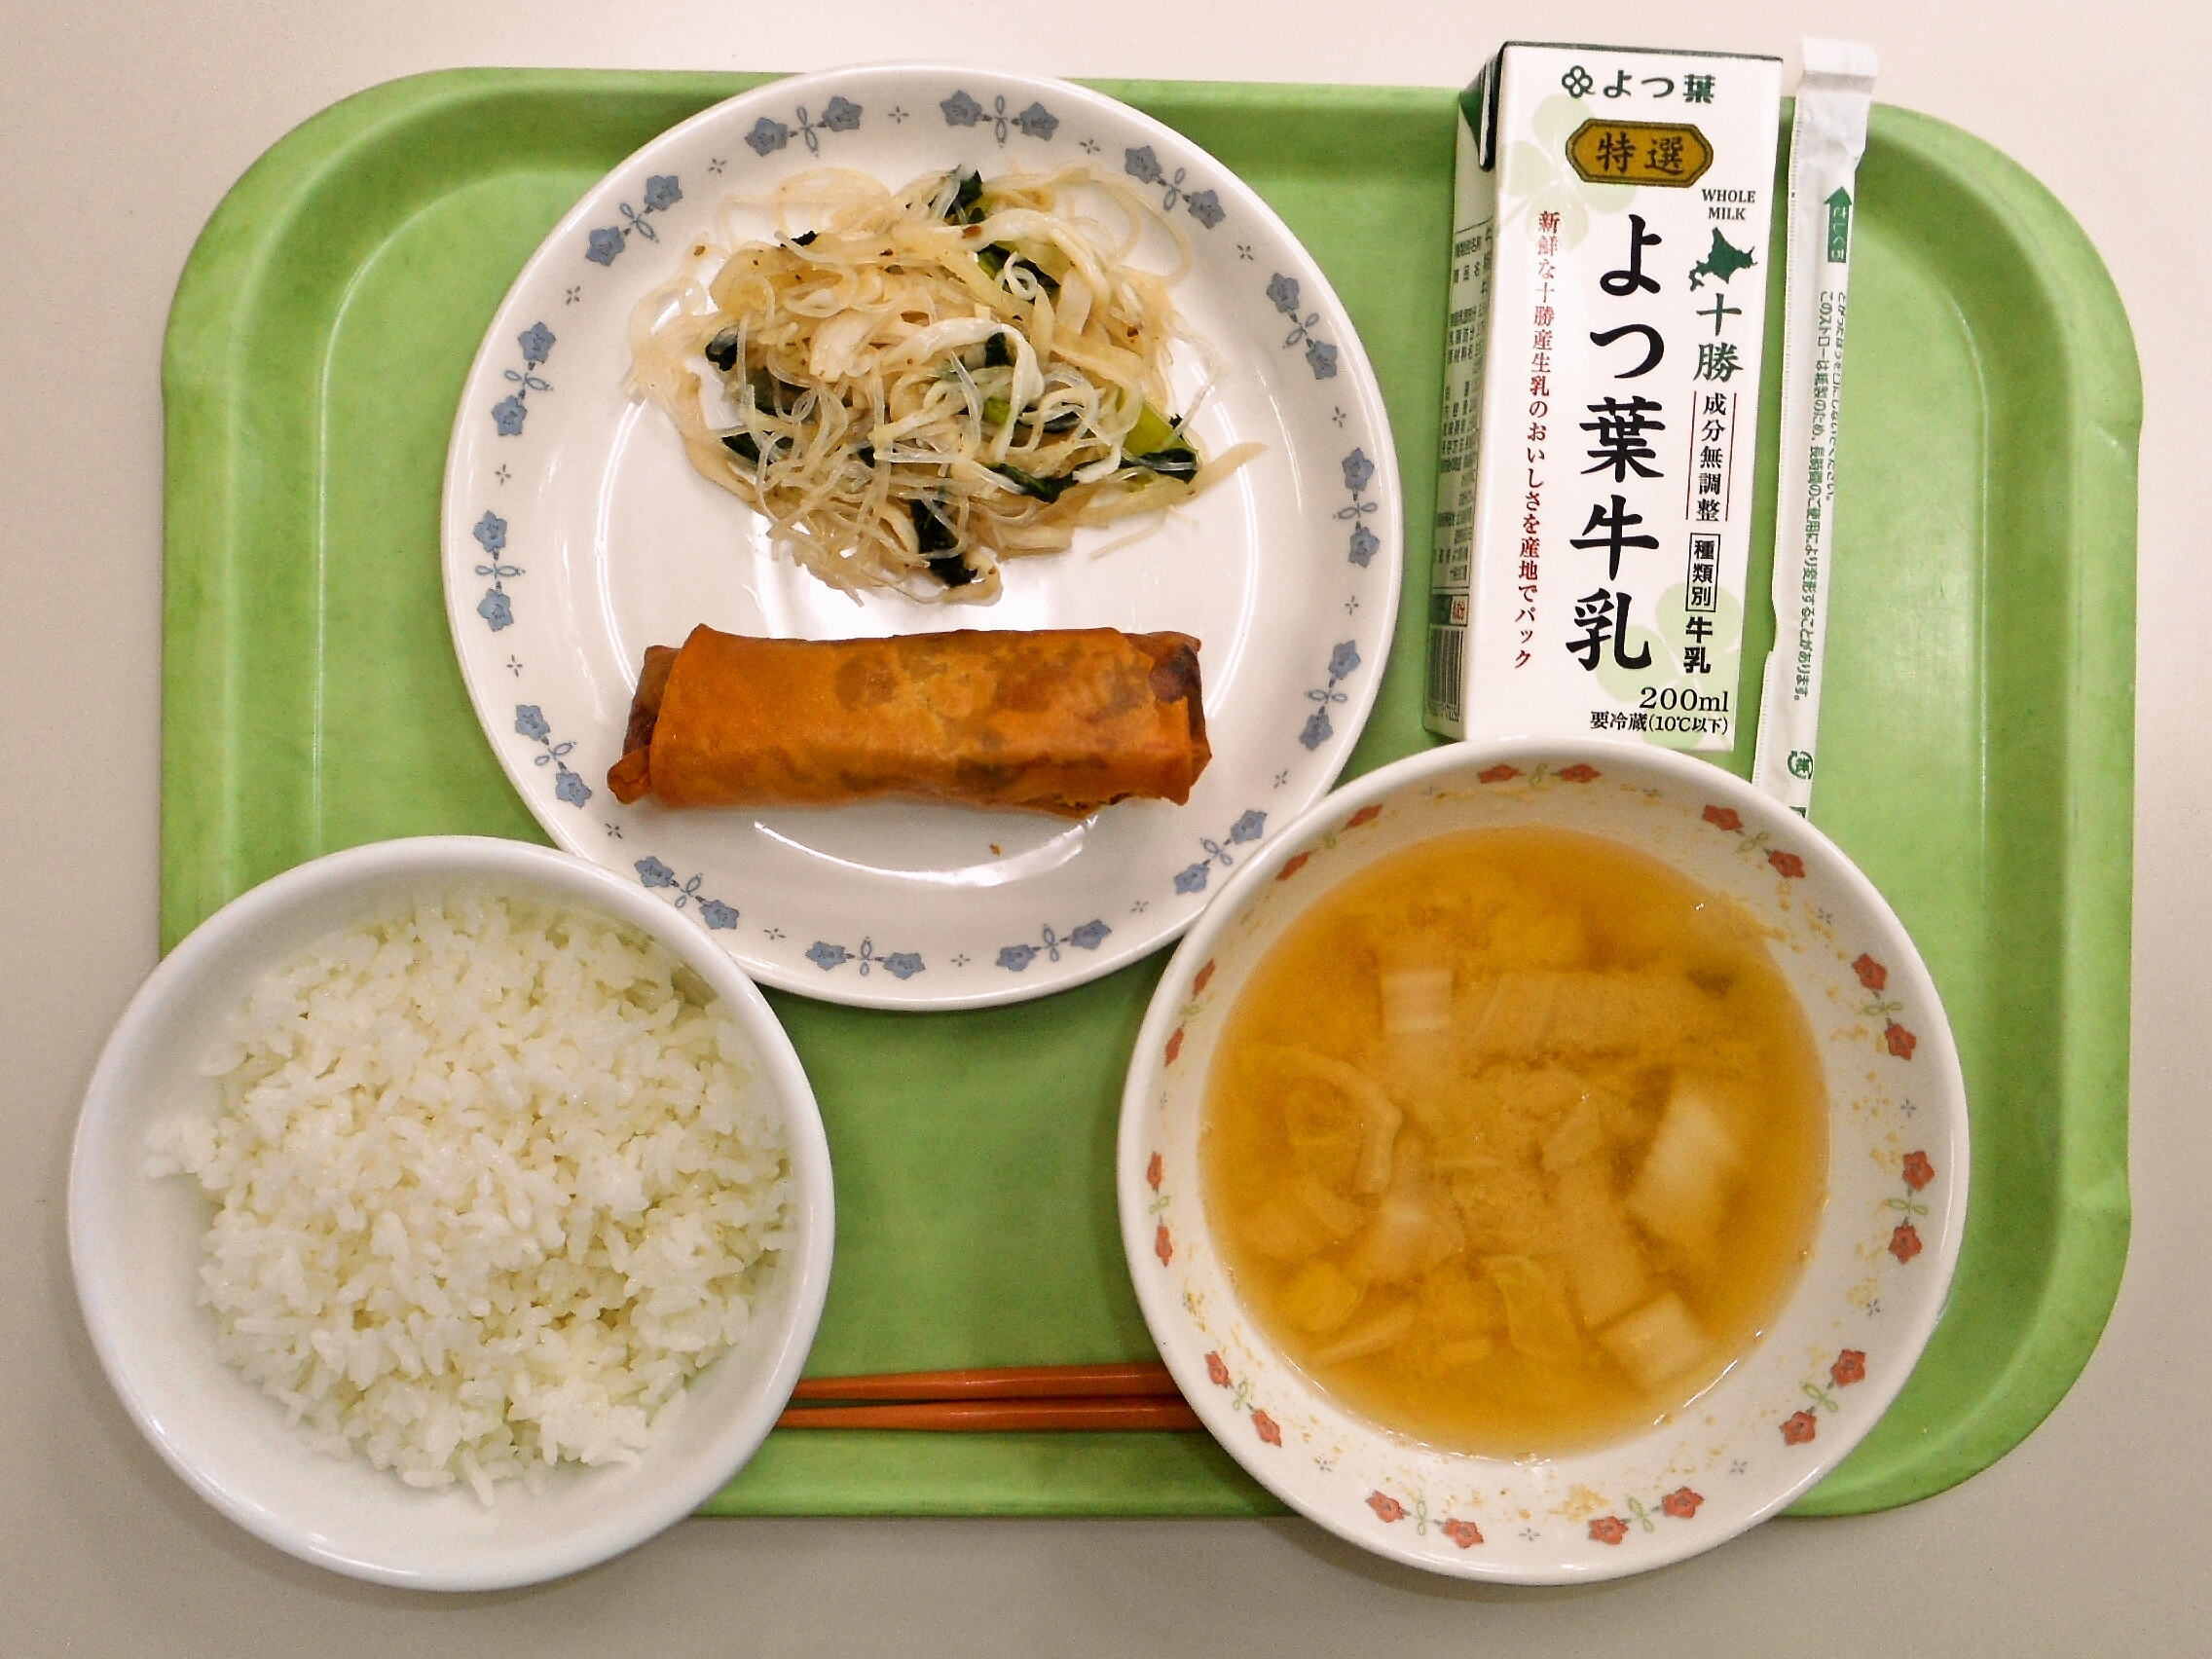 ごはん、みそ汁（白菜・人参）、春巻、大根と青菜のサラダ、牛乳